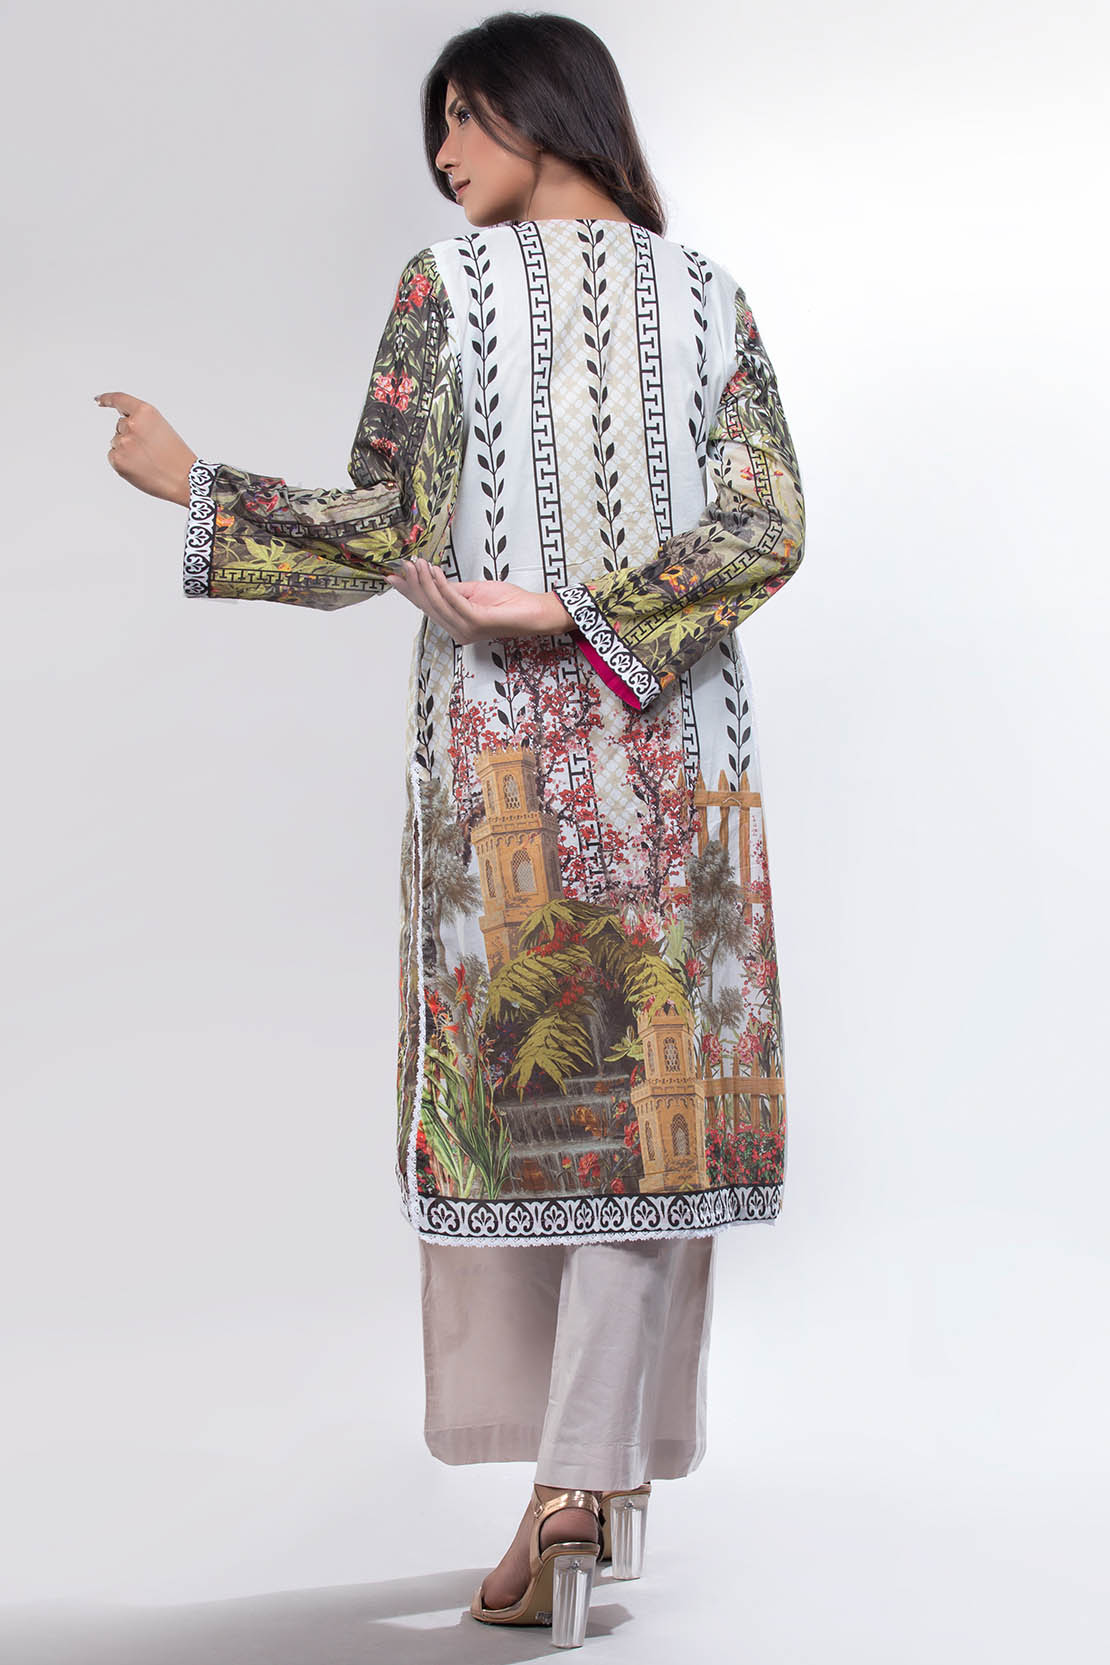 Beautiful and stylish embroidery Pakistani dress by Warda Saleem